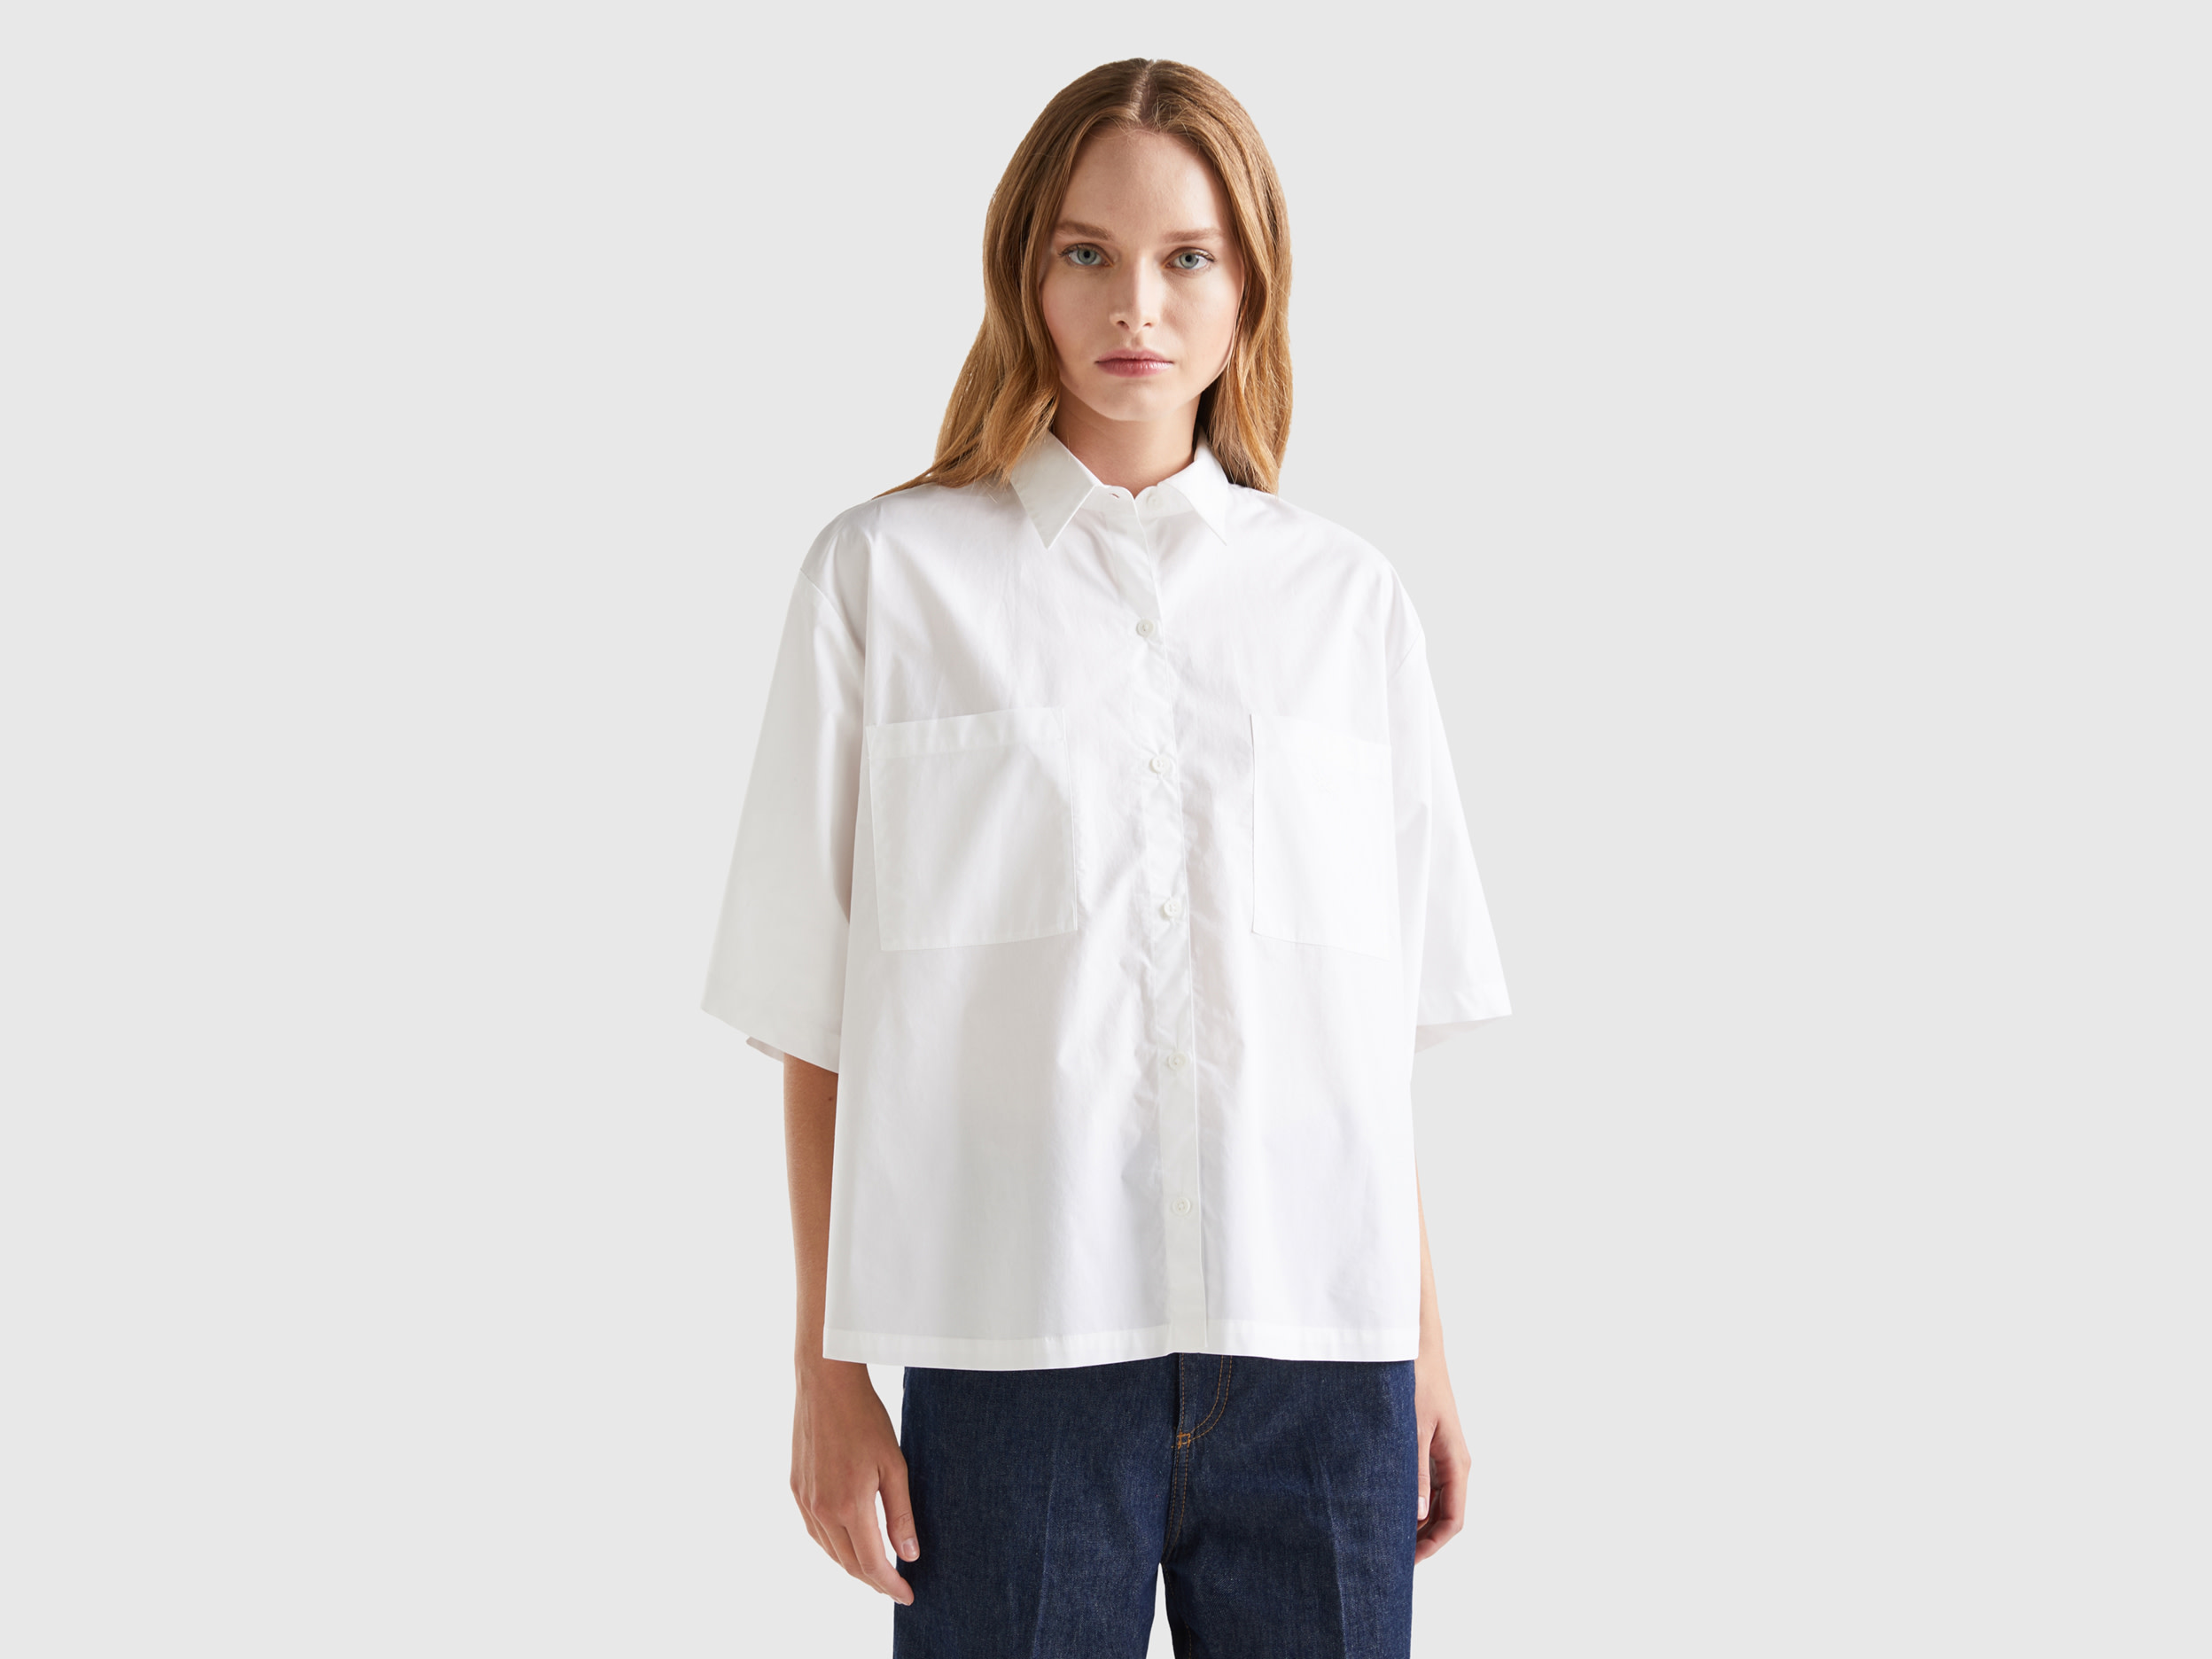 Benetton, Loose Boxy Fit Shirt, size XXS, White, Women